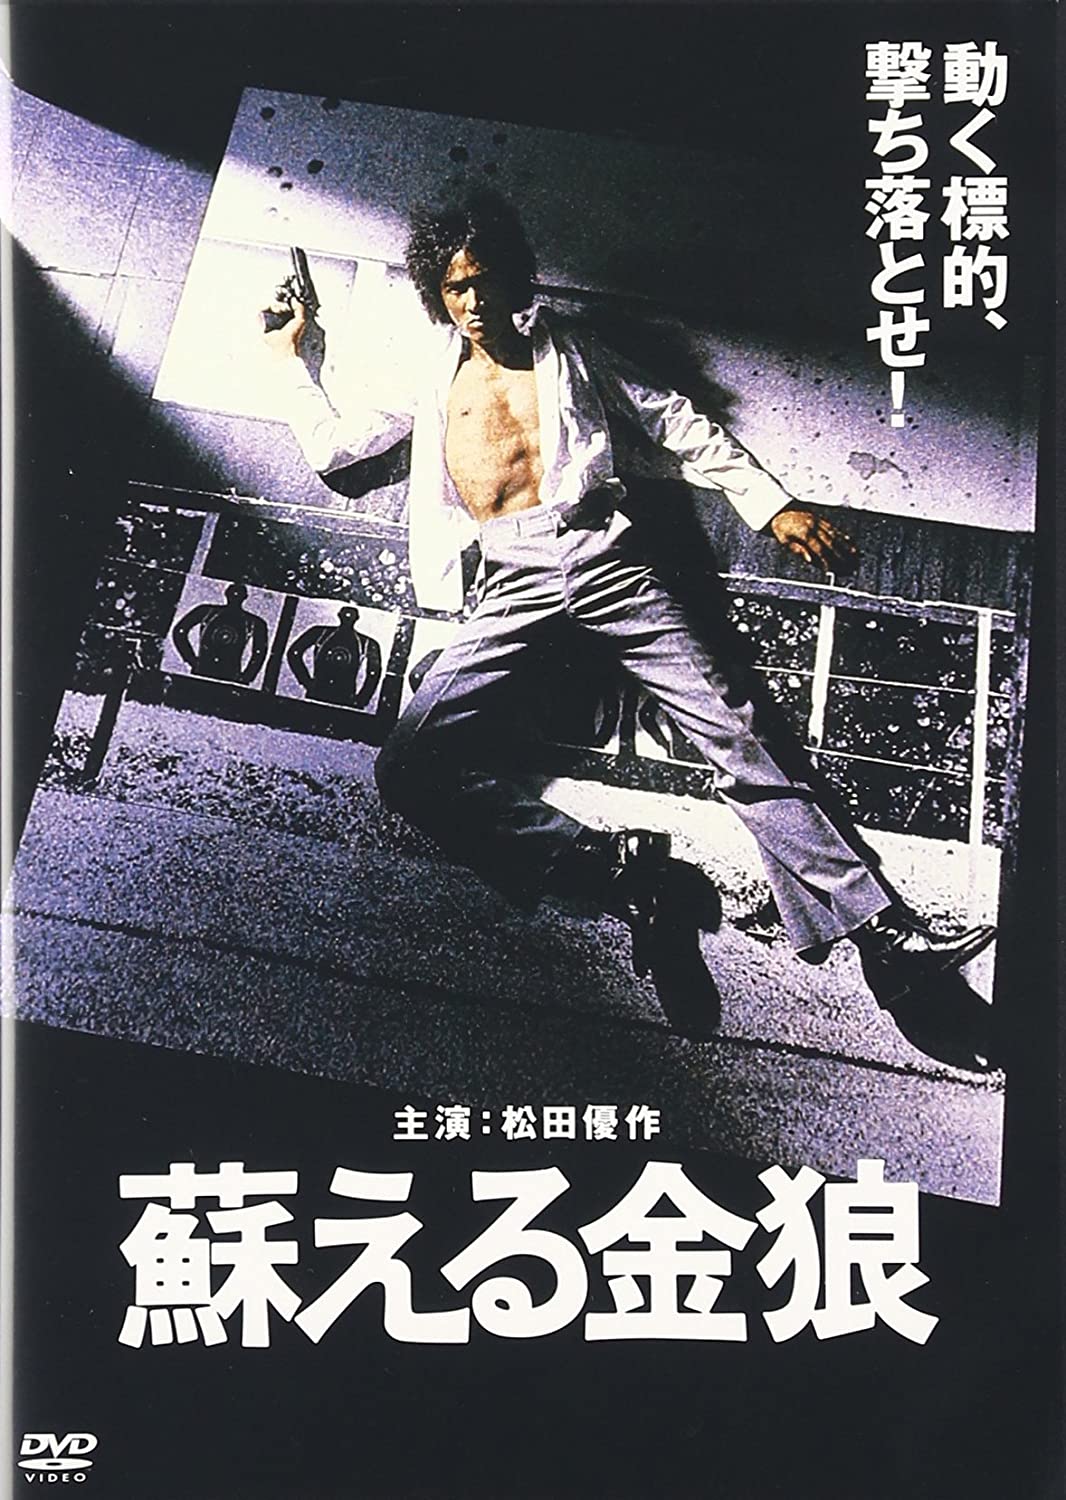 『蘇える金狼』DVDパッケージ ©1979角川映画